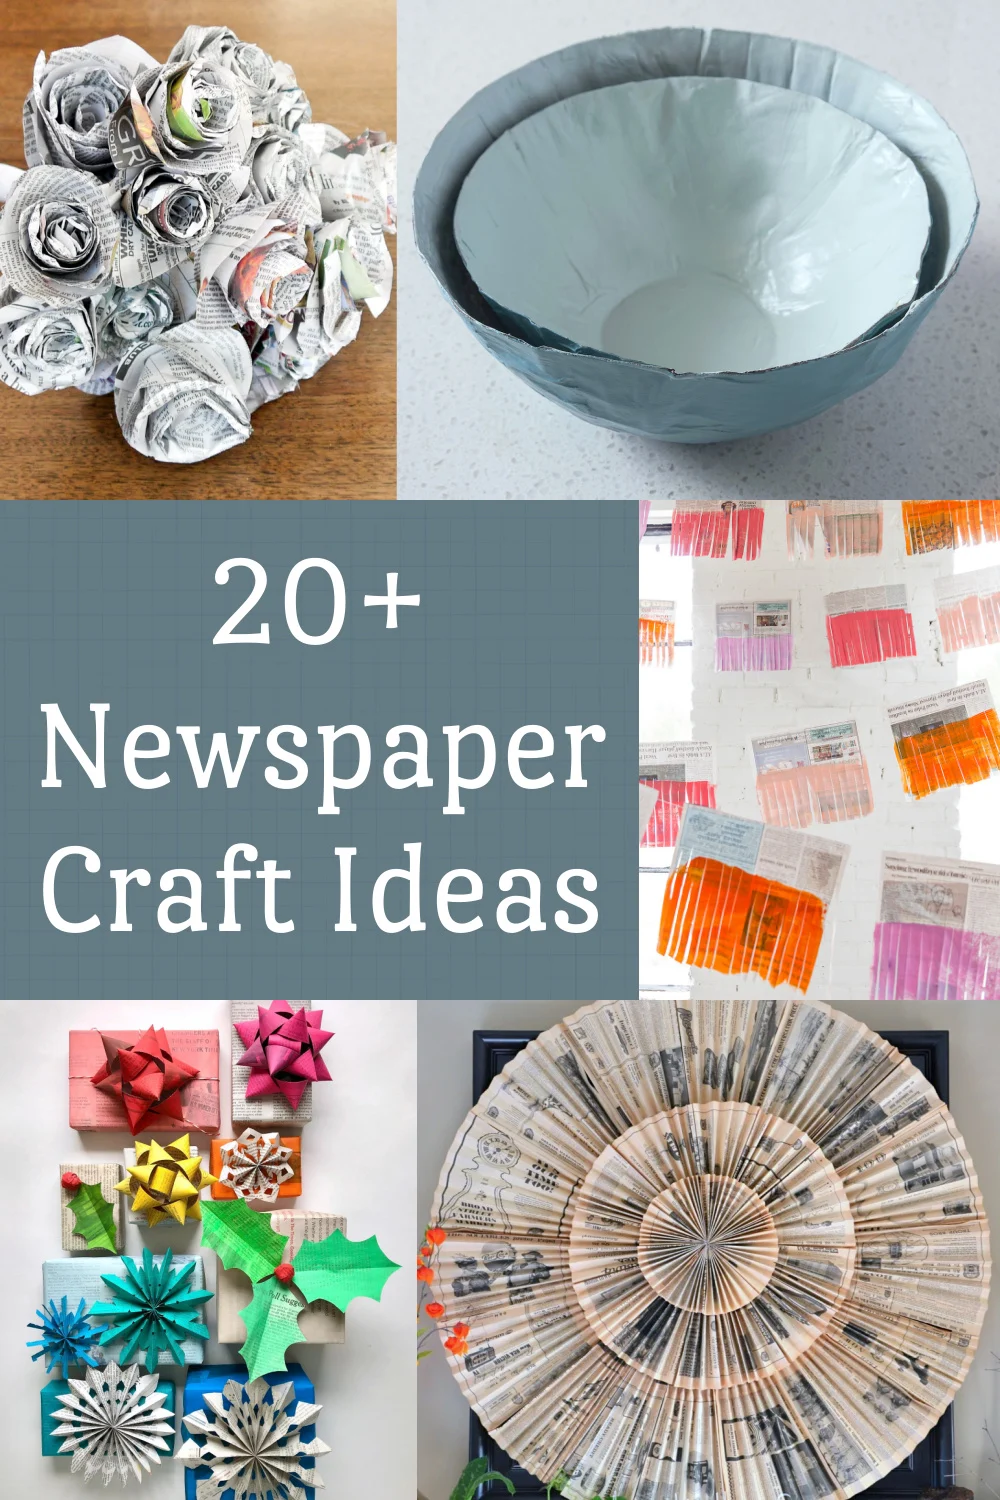 How to Make a Decorative Newspaper Bag - The Crazy Craft Lady